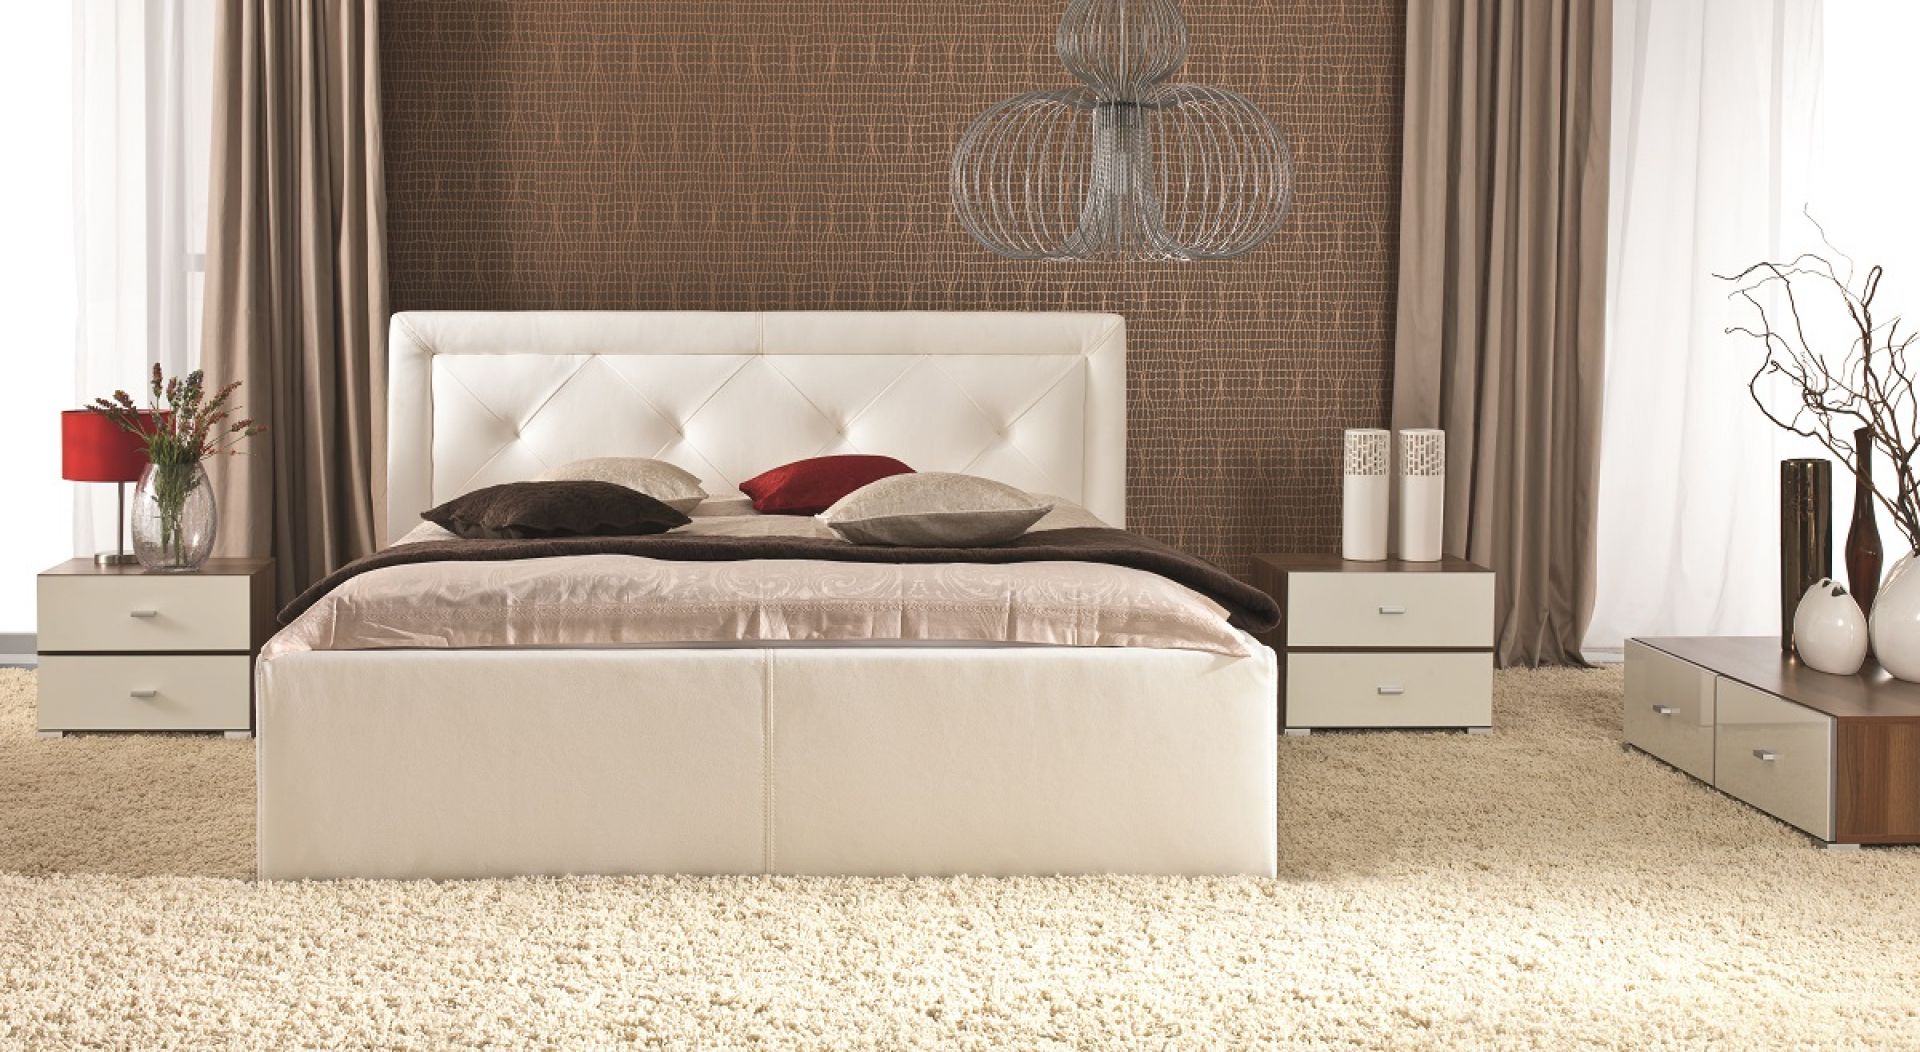 Łóżko Karo z klasycznym pikowaniem w romby doda uroku każdej sypialni. Łóżko dostępne jest w wersji z pojemnikiem i bez pojemnika. Fot. Wajnert 